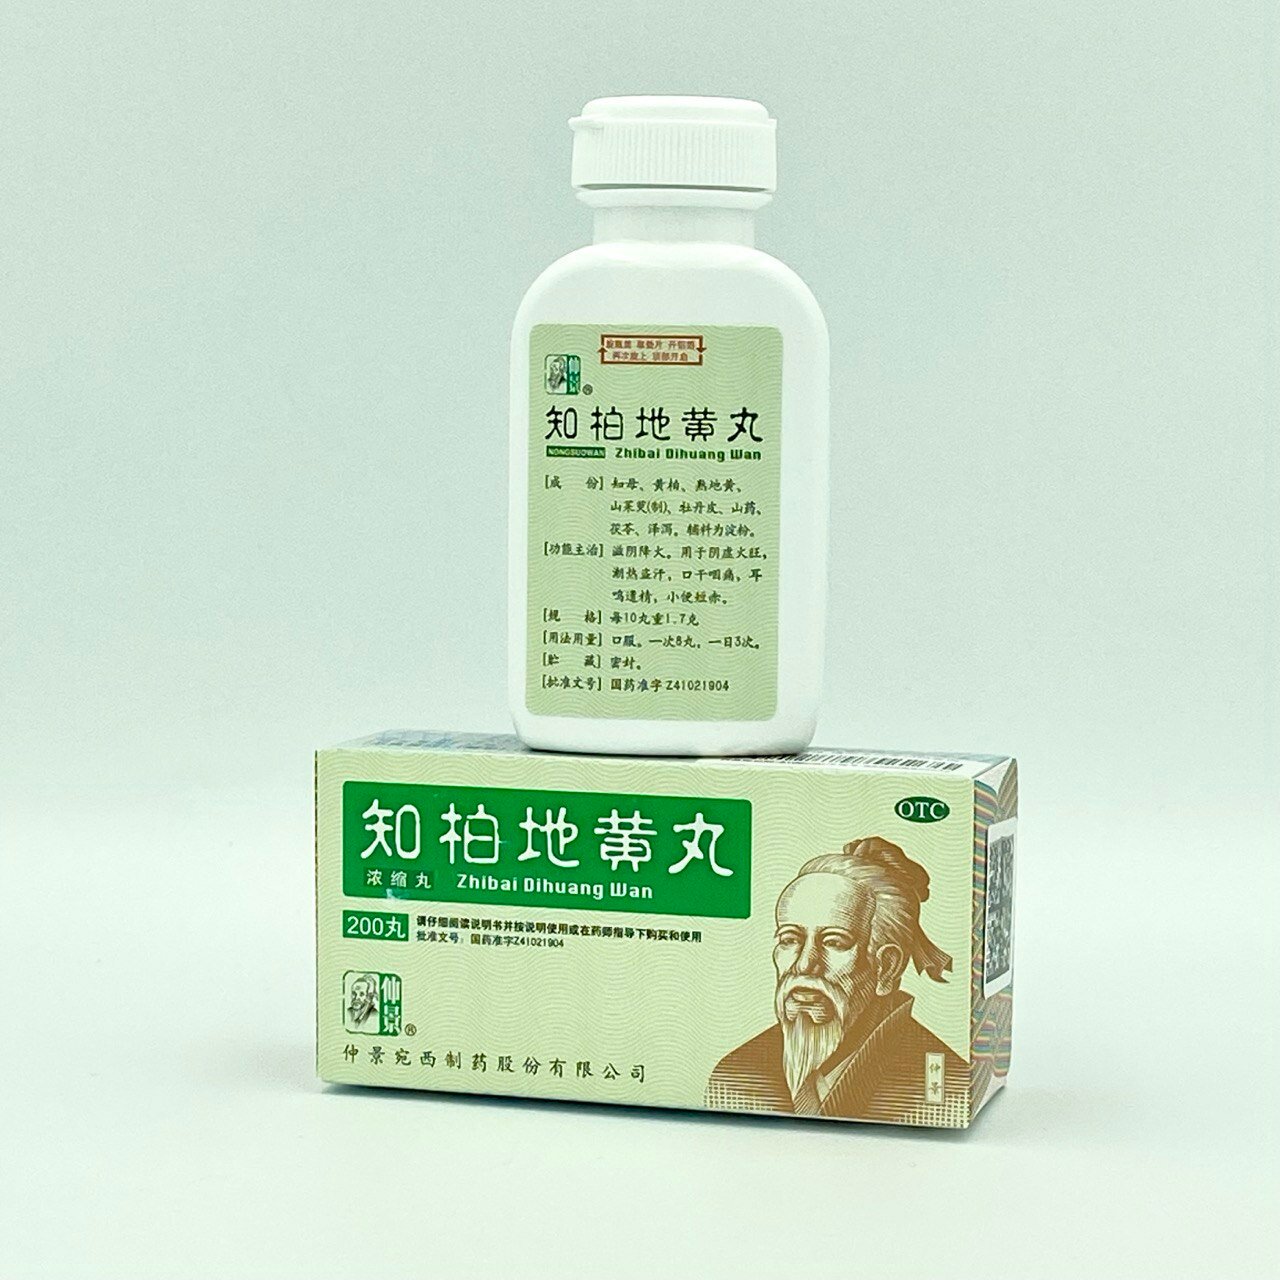 Чжи Бай Ди Хуан Вань, 200 пилюль, для питания и улучшения функции почек, при хронических заболеваниях почек, Синофарм